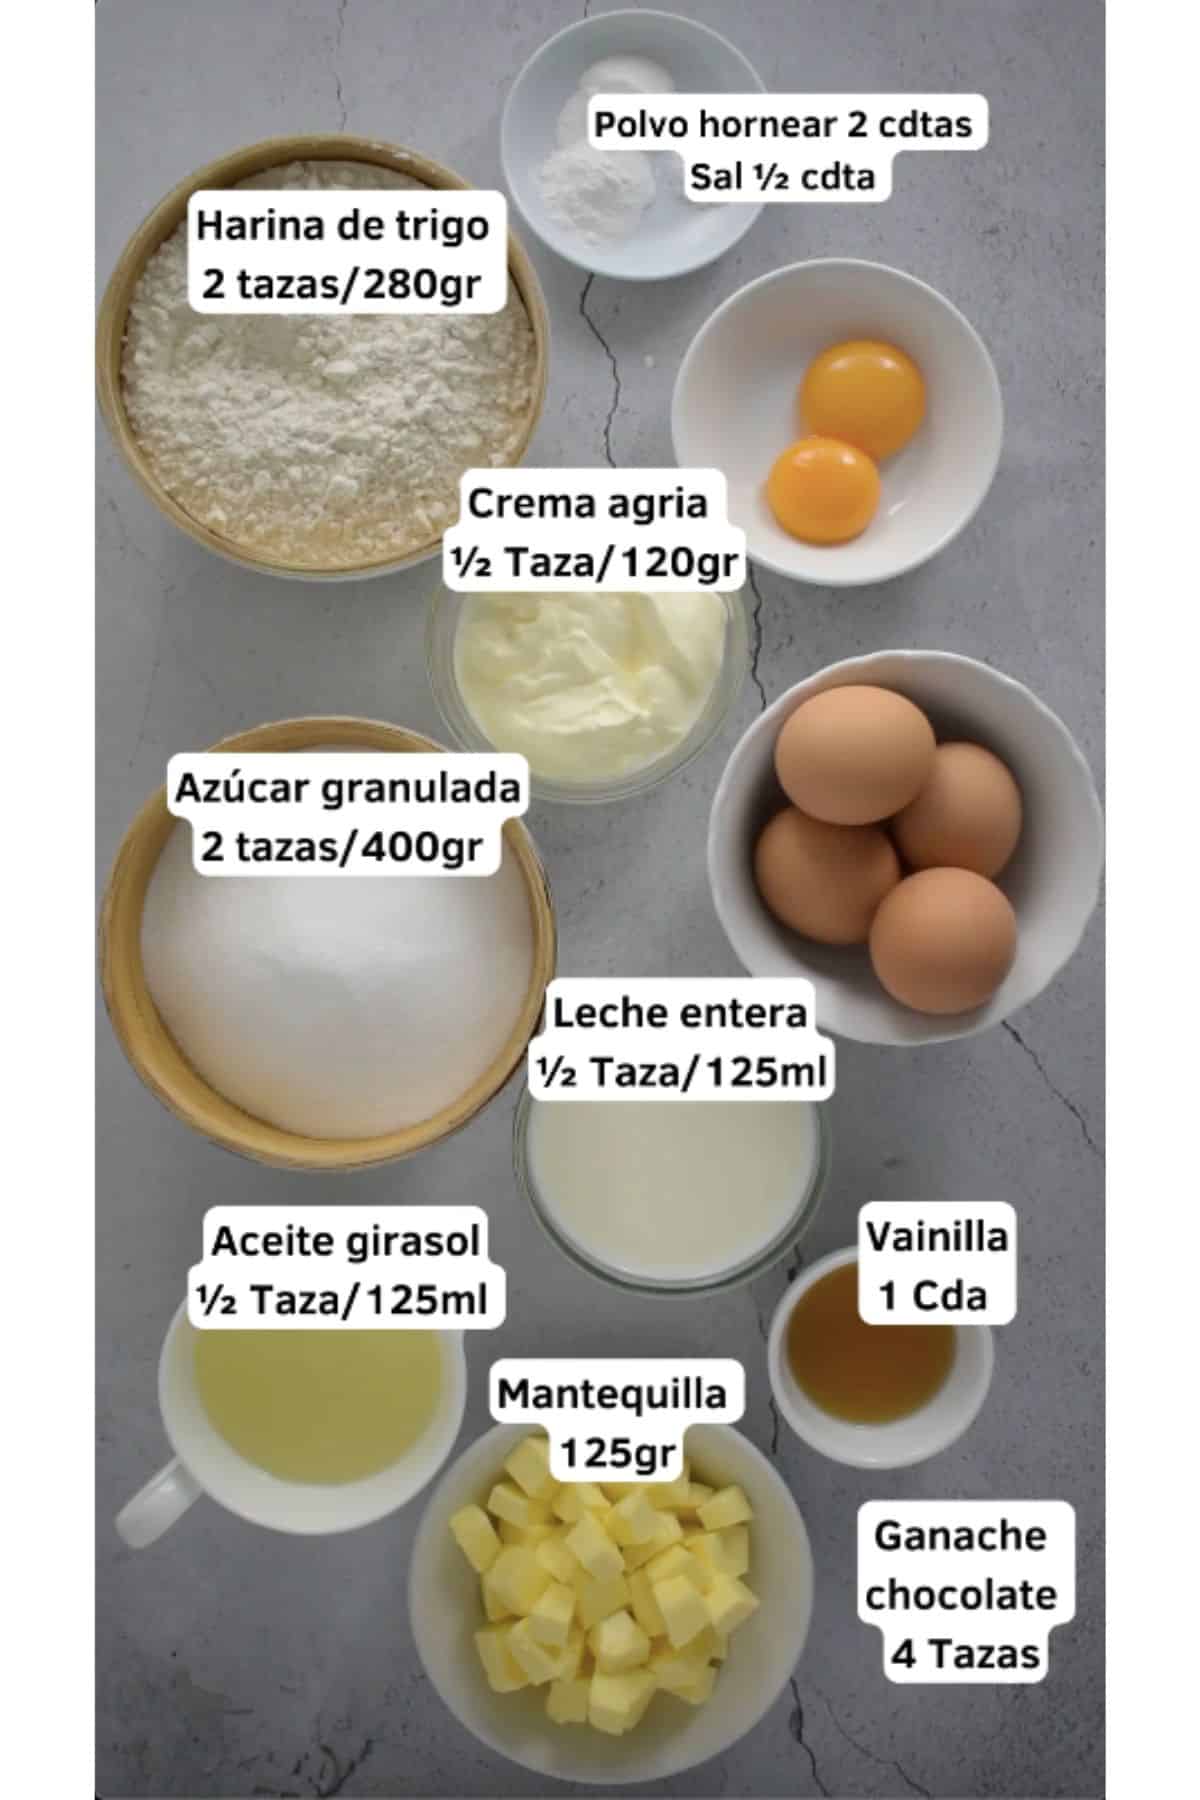 Ingredientes para preparar torta de vainilla esponjosa. Harina, huevos, azúcar, leche, extracto de vainilla, aceite de girasol, mantequilla, crema agria y ganache de chocolate.